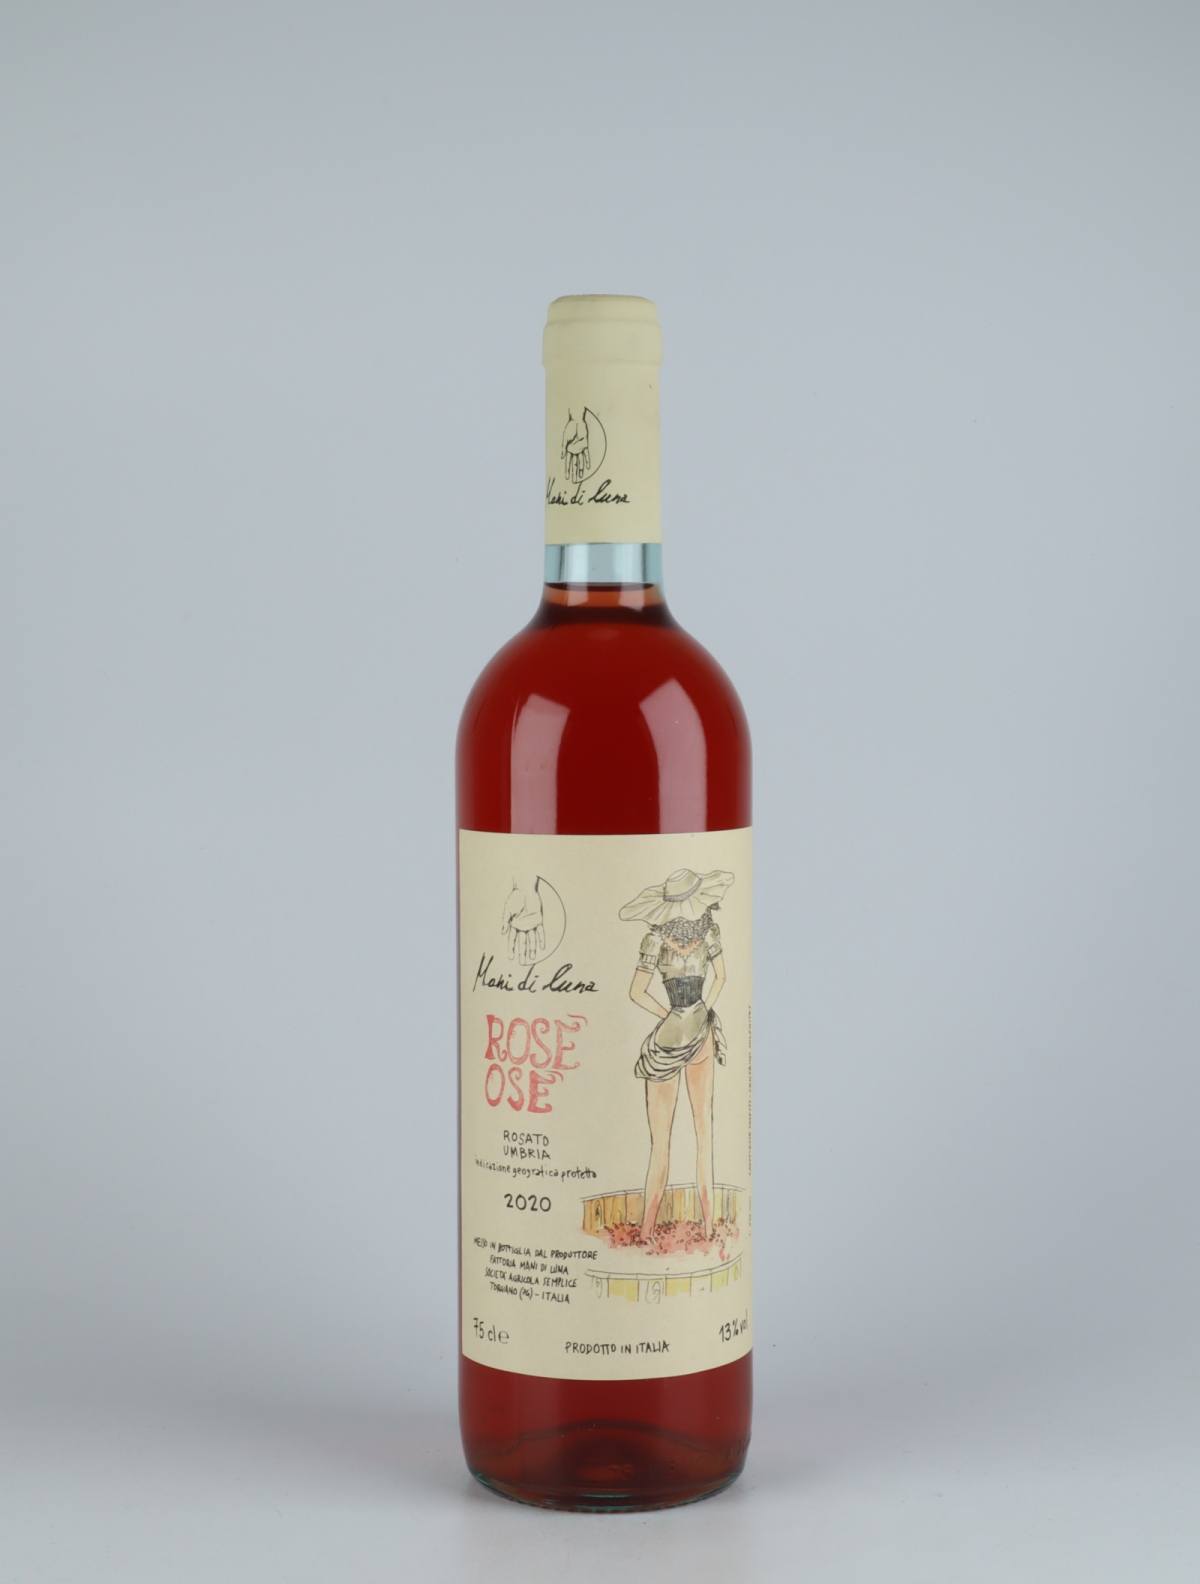 En flaske 2020 Rosè Osè Rosé fra Mani di Luna, Umbrien i Italien